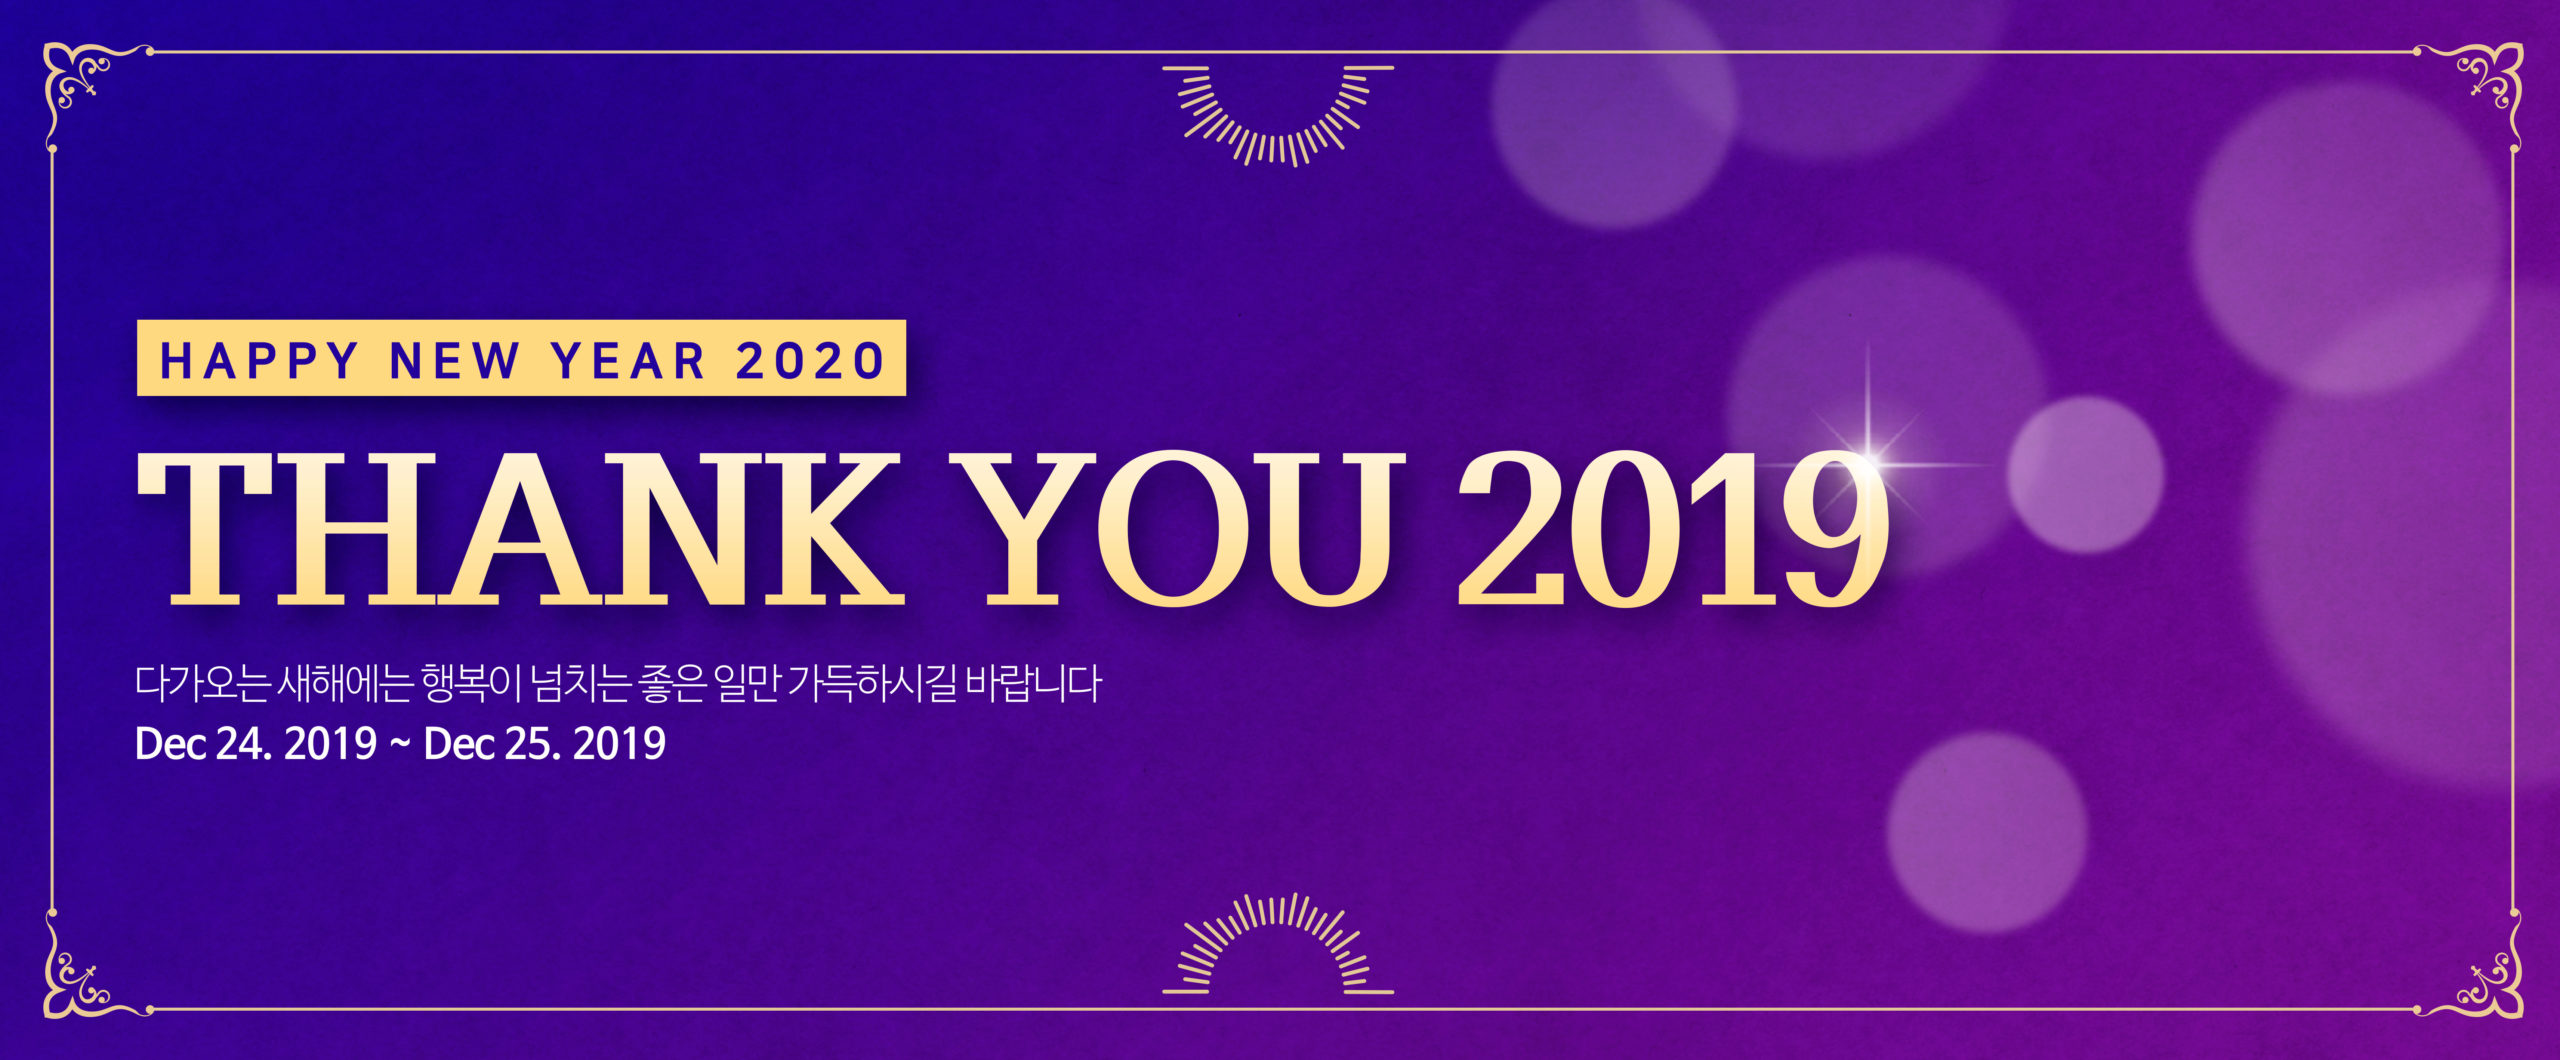 “谢谢你2019”跨年活动宣传长广告Banner模板插图